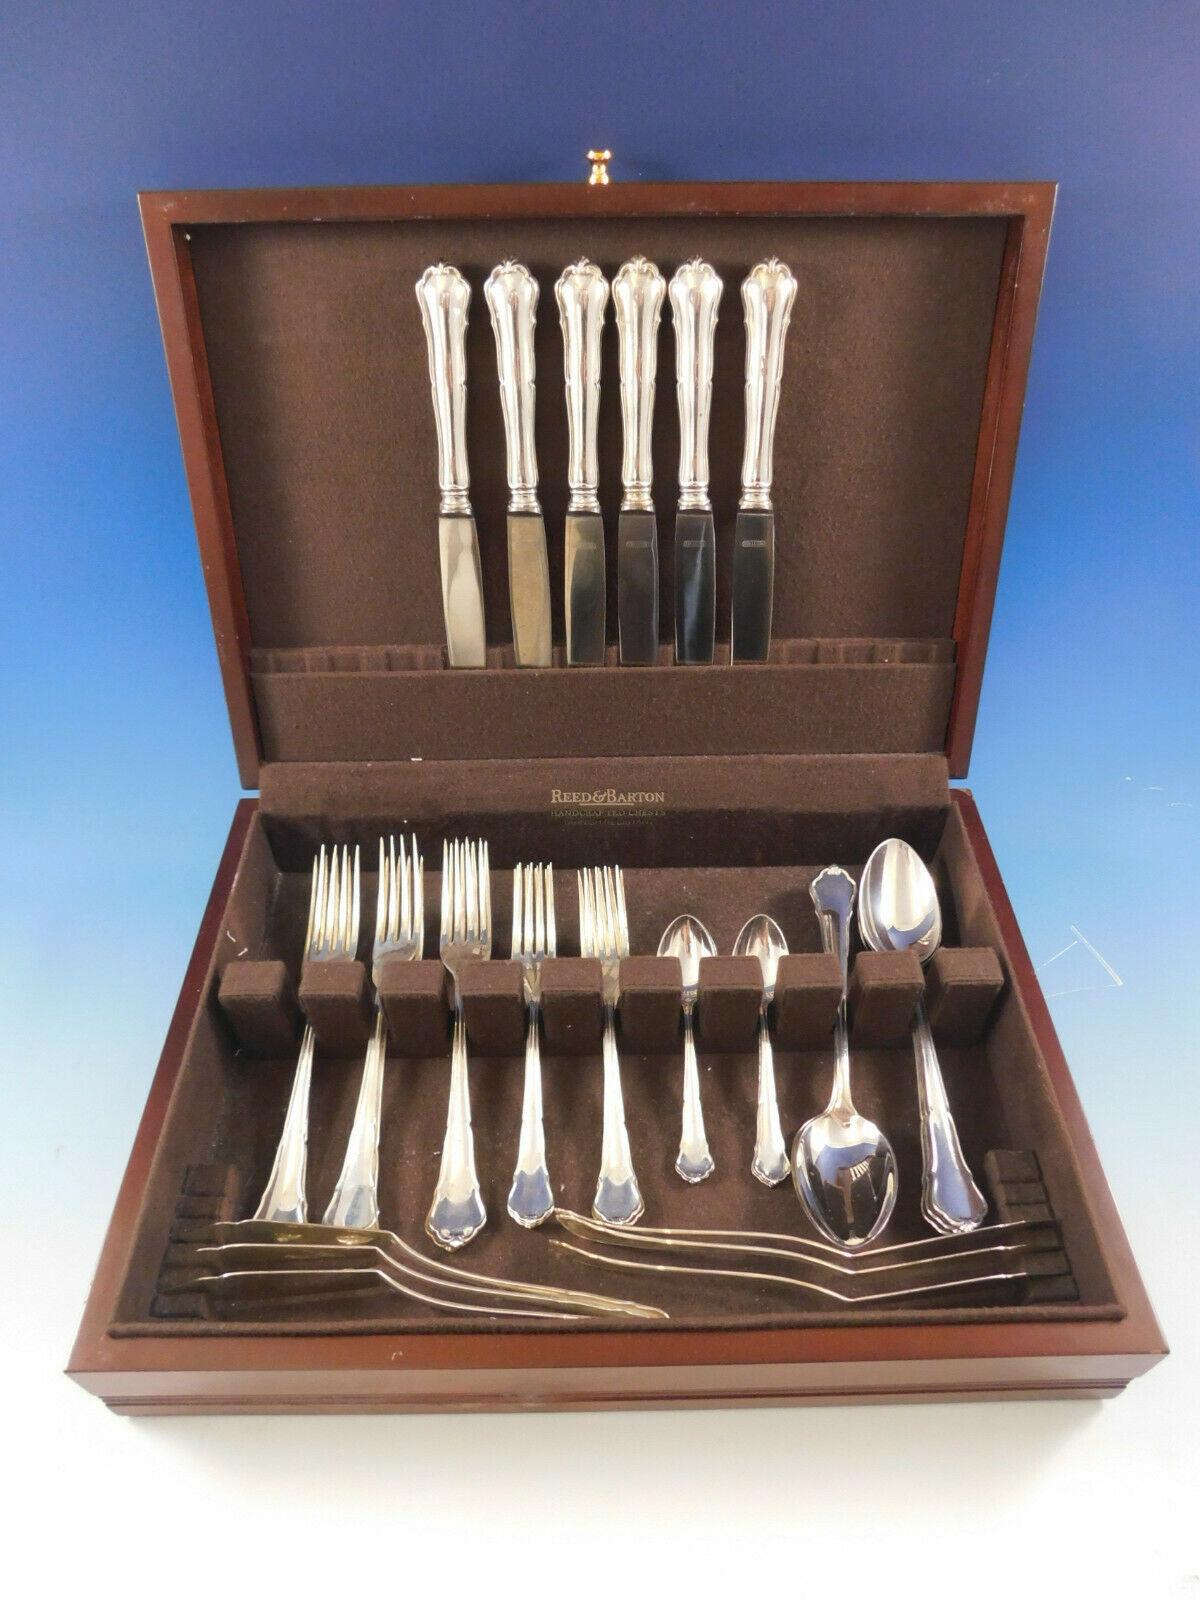 Chippendale by Hanseatische Silberworenfabrisk German Sterling Silver flatware set - 36 pieces. This set includes:

6 dinner knives, 9 7/8